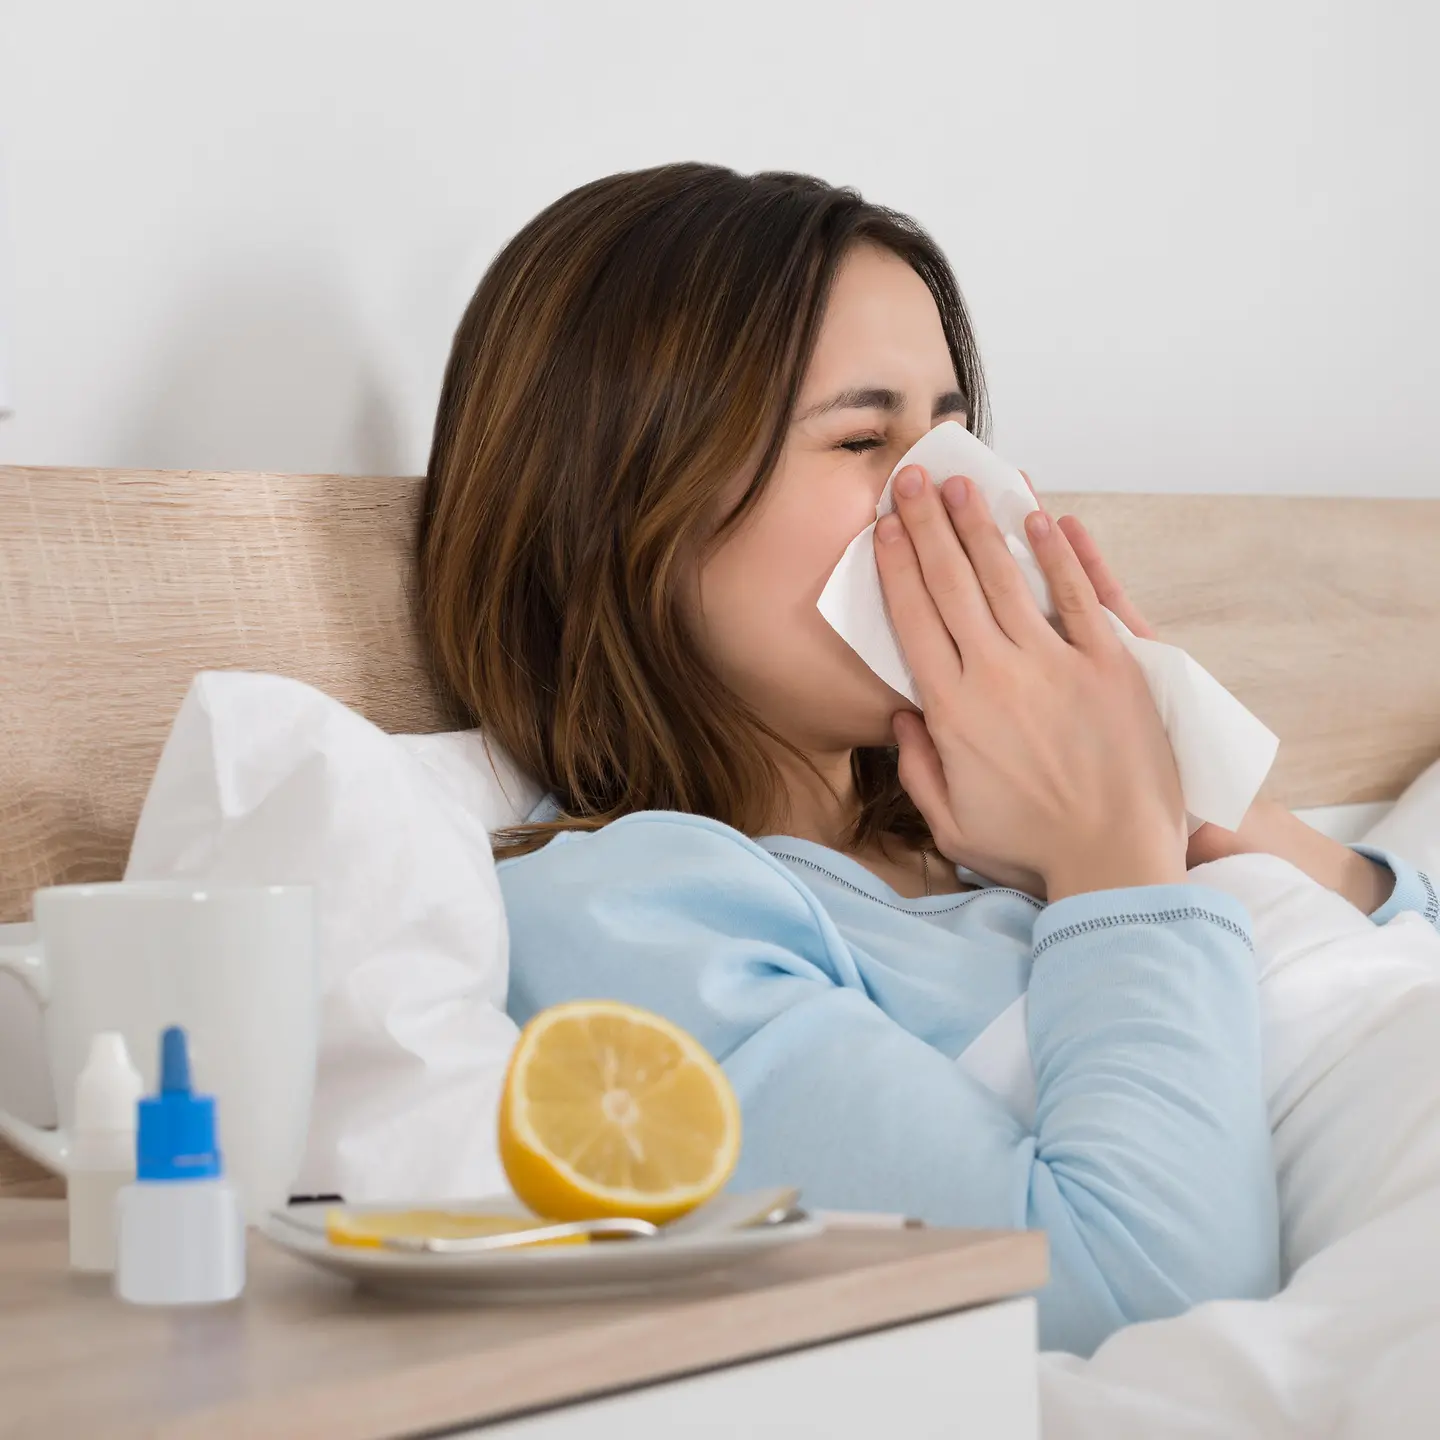 Das Bild zeigt eine Frau, die mit einer Erkältung im Bett liegt und sich die Nase putzt.